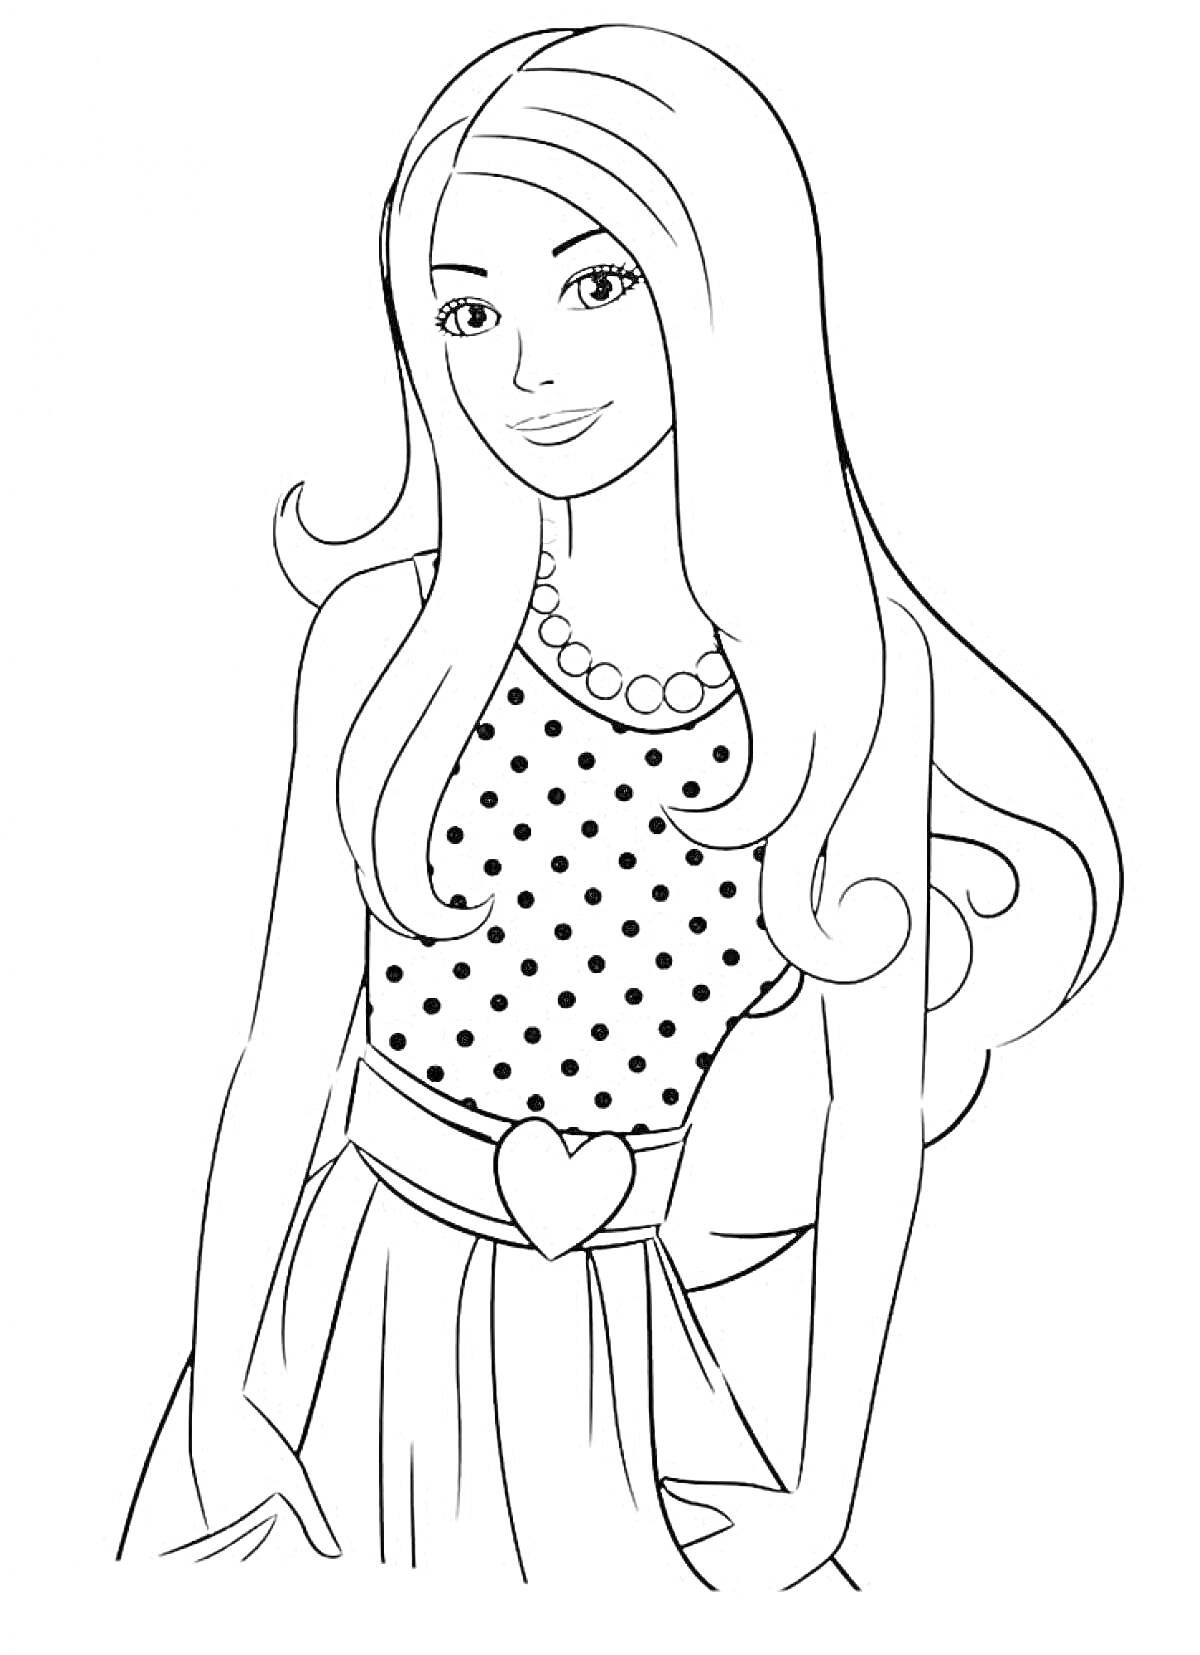 Раскраска Девушка с длинными волосами в наряде с горошком, блестящий пояс с сердечком и колье